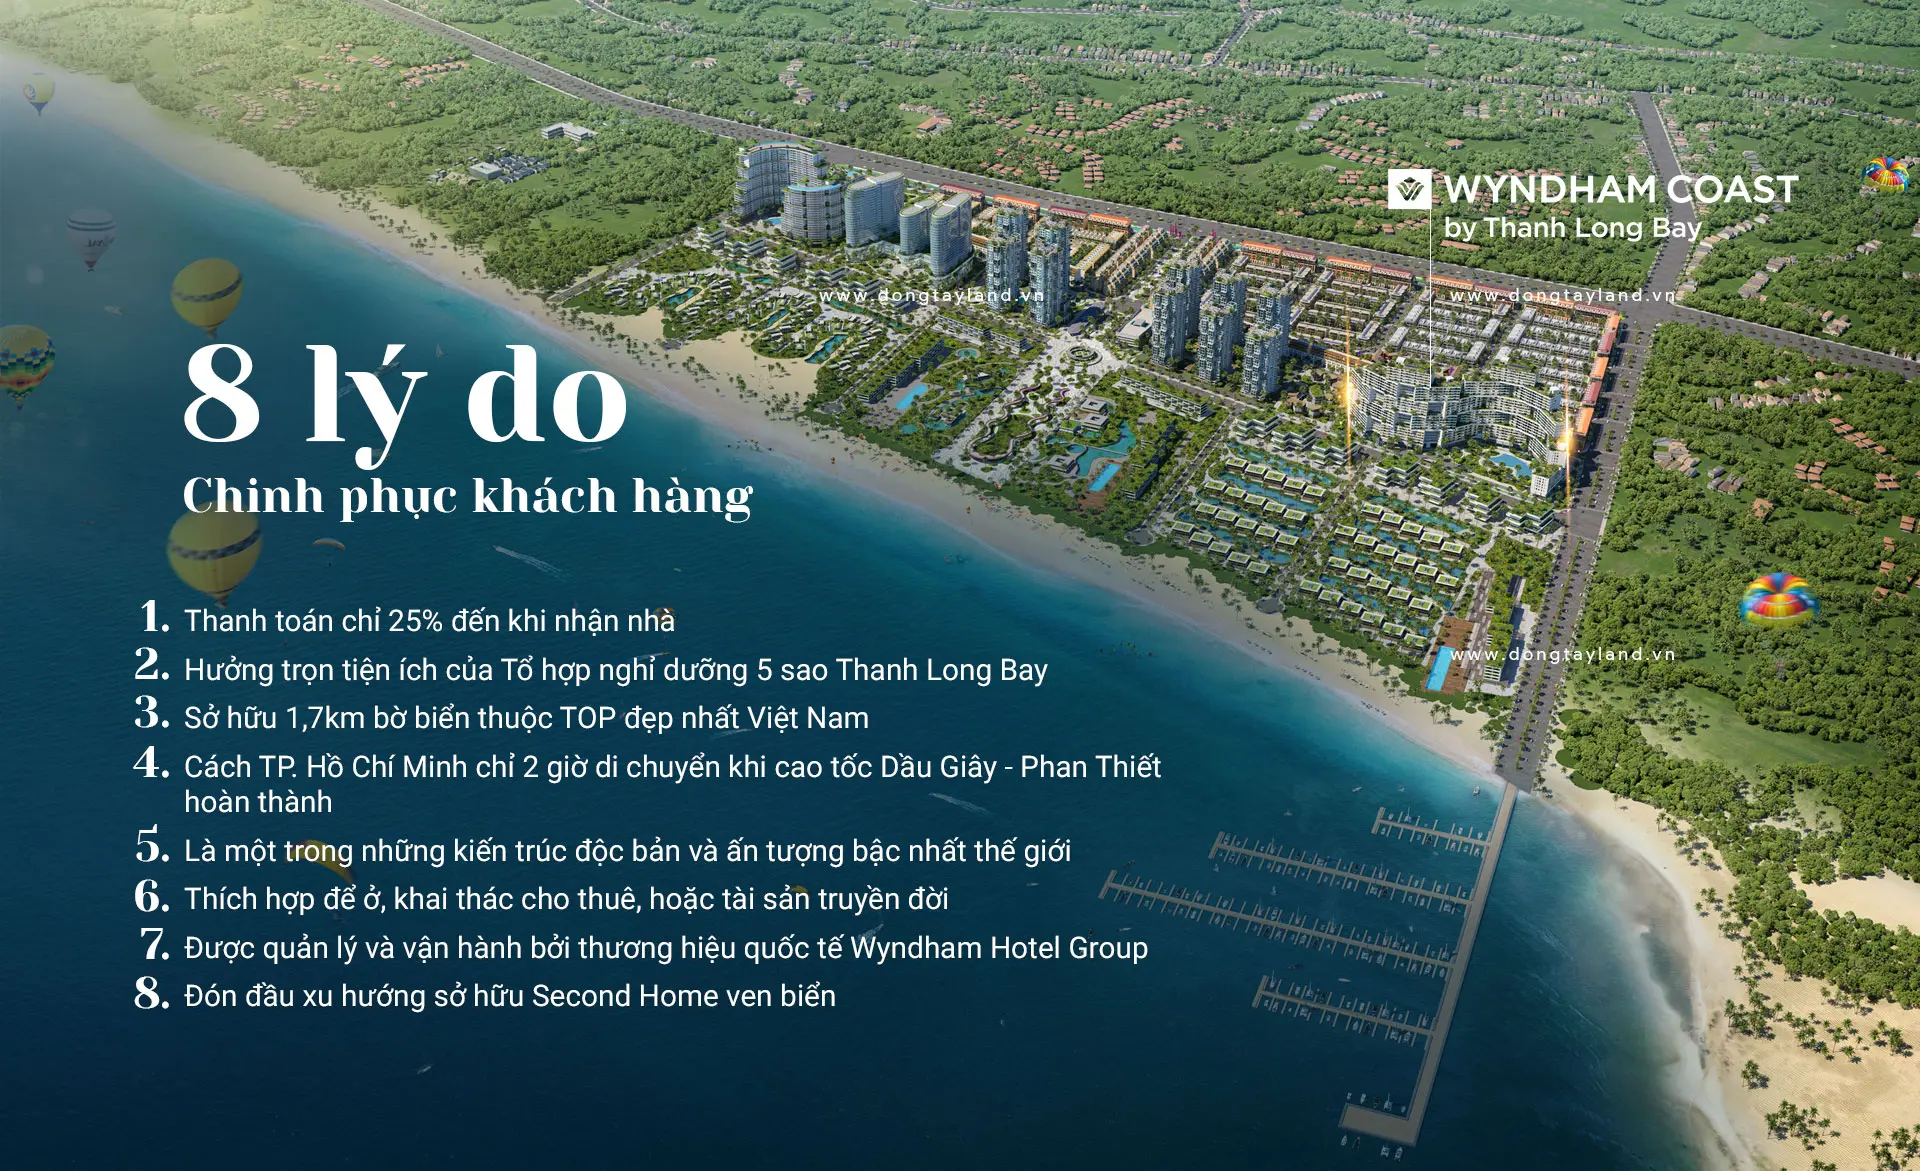 Lý do lựa chọn căn hộ Wyndham Coast by Thanh Long Bay